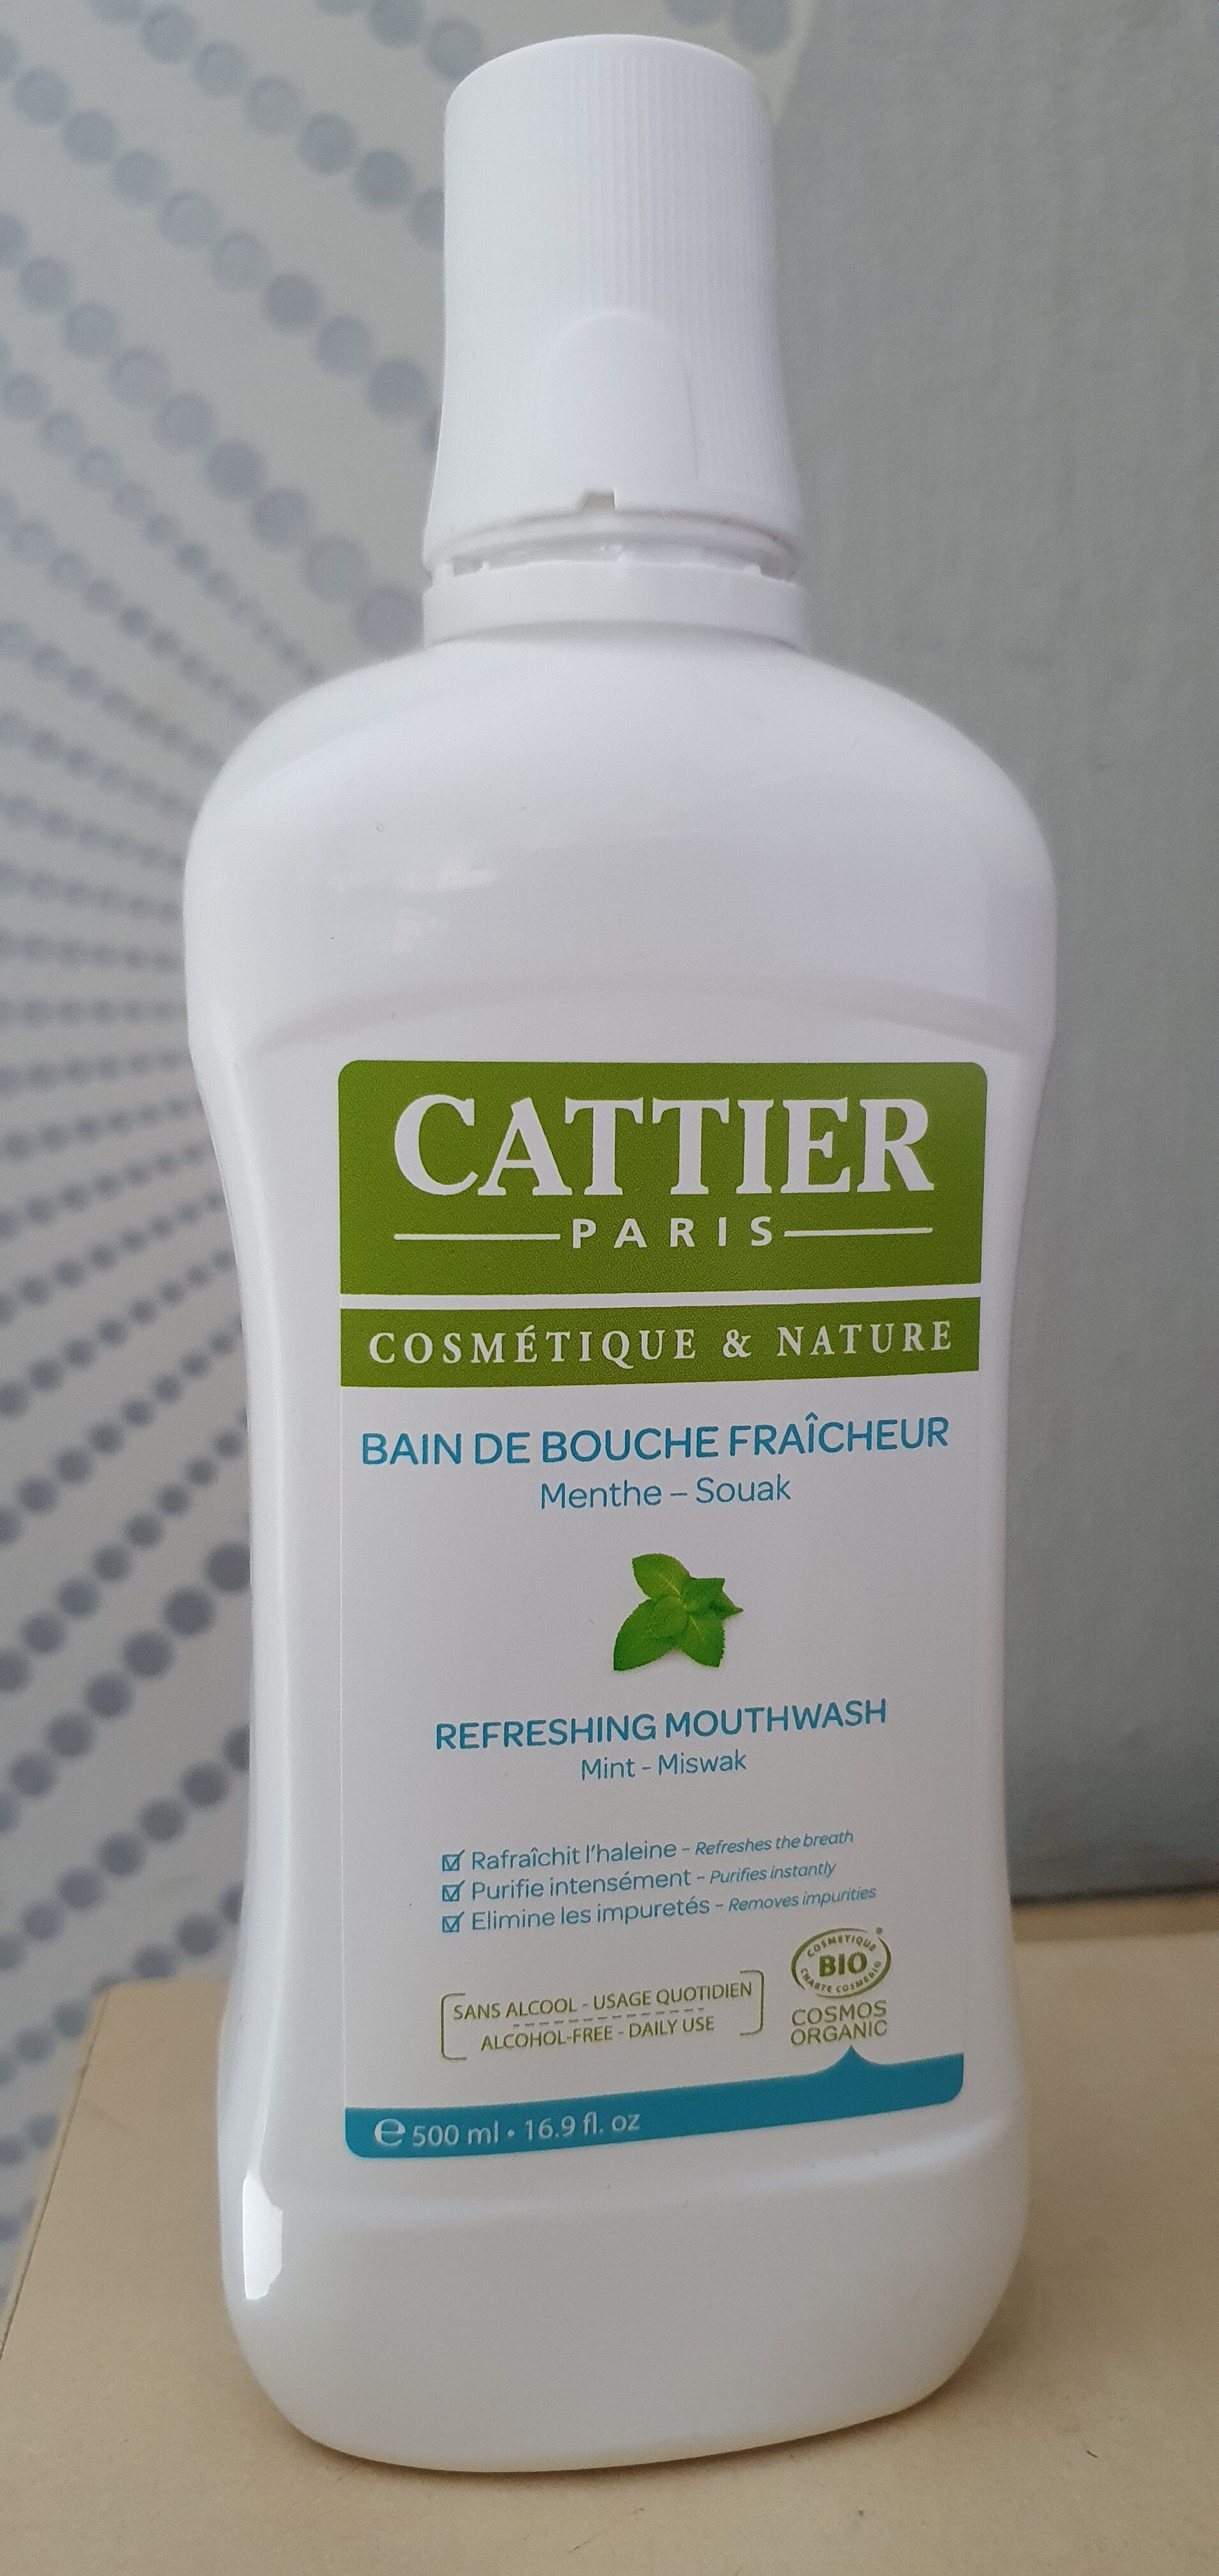 Cattier Bain de bouche fraîcheur - Product - fr